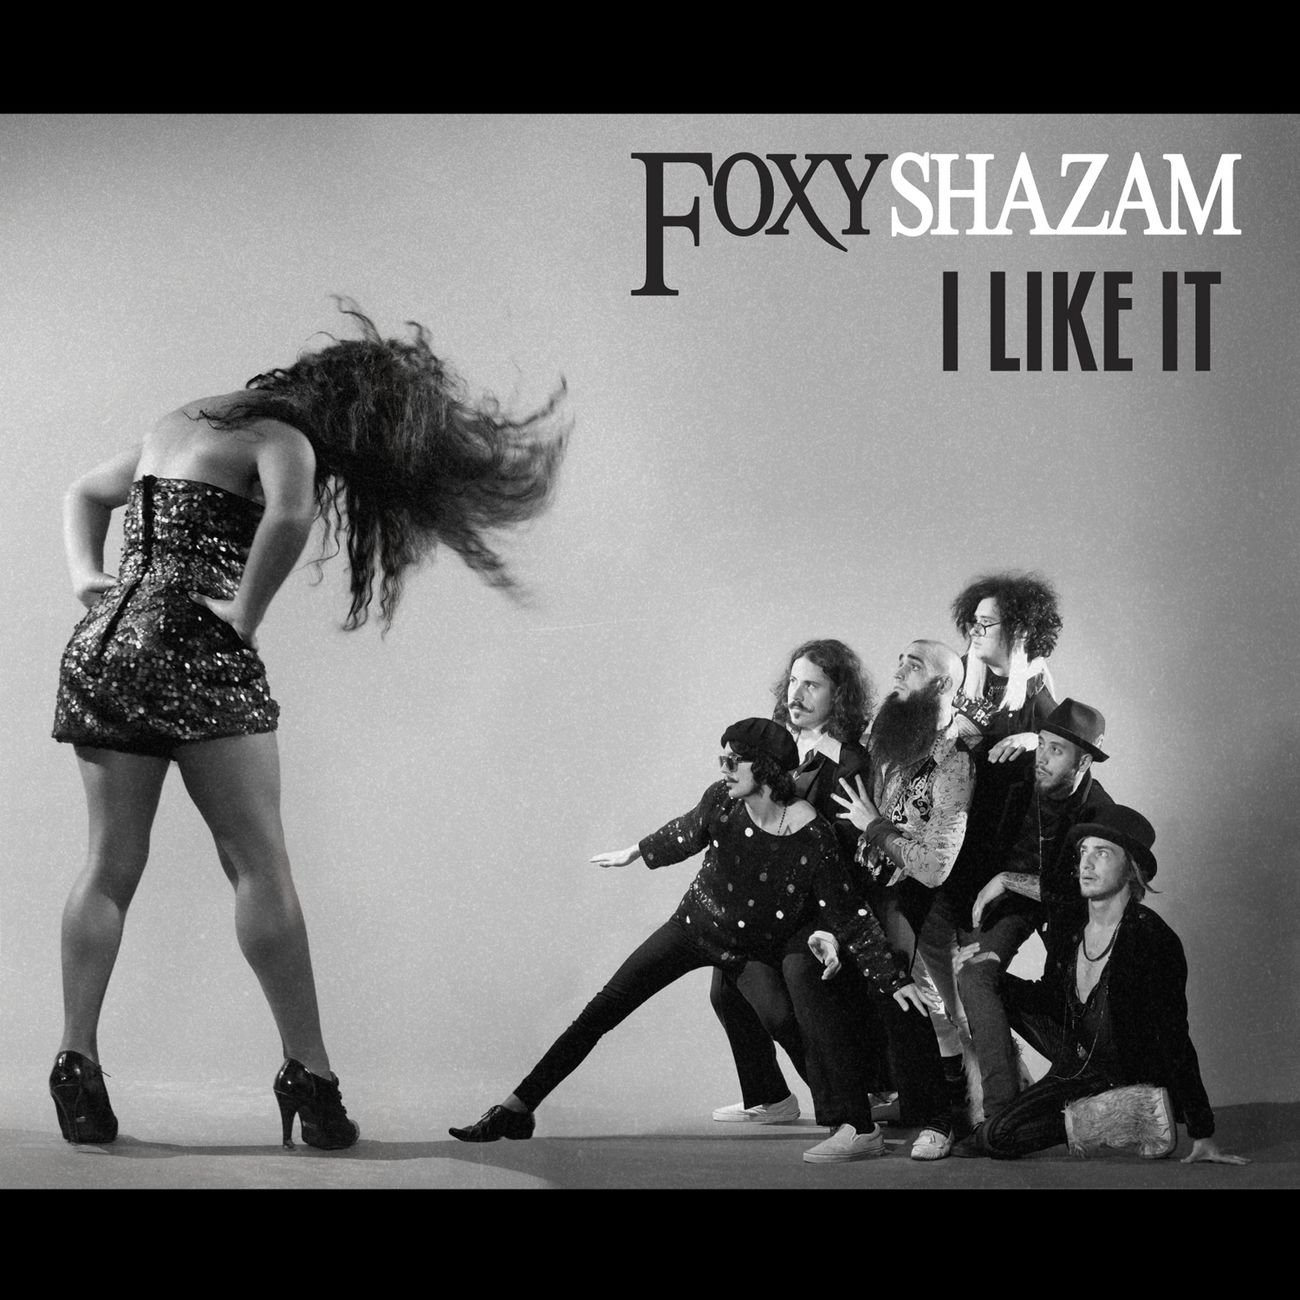 Foxy shazam i like it lyrics